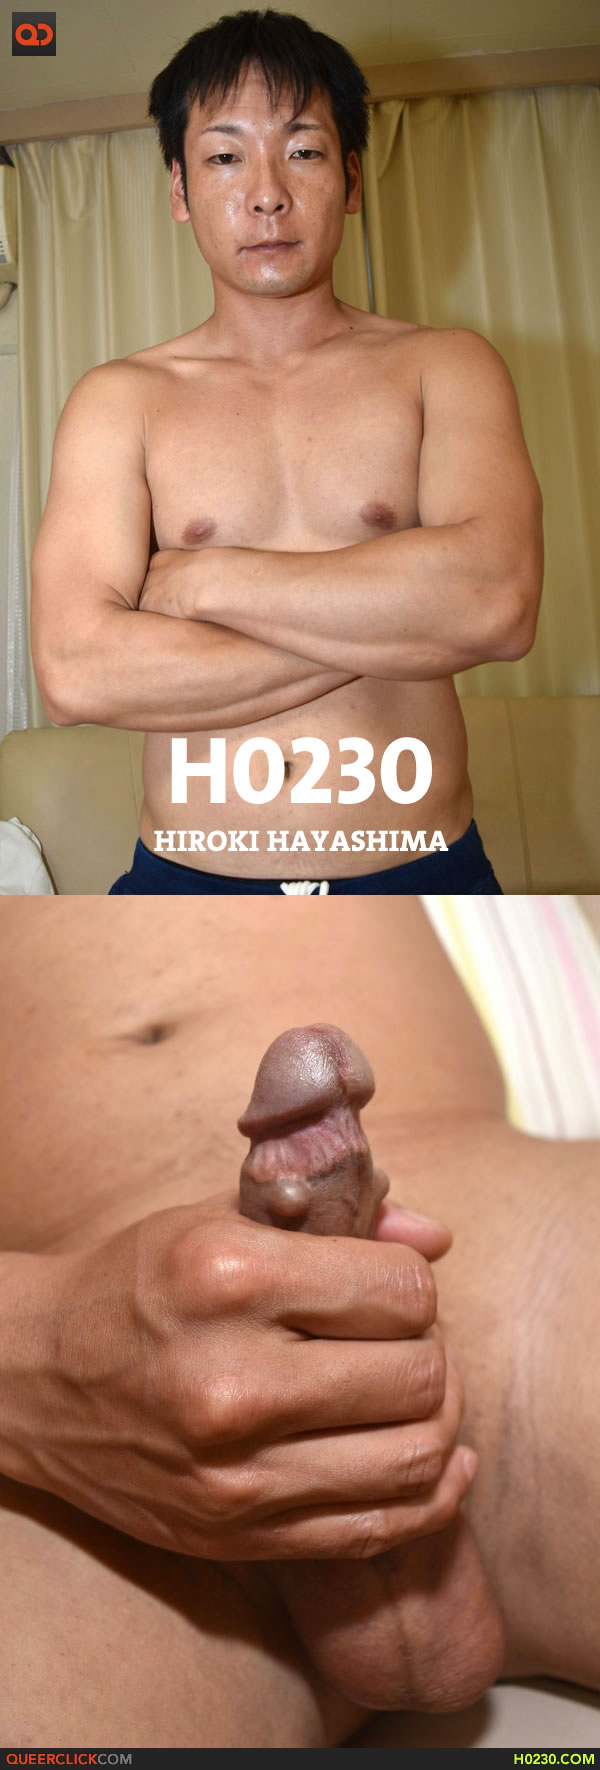 h0230-hiroki-hayashima-1